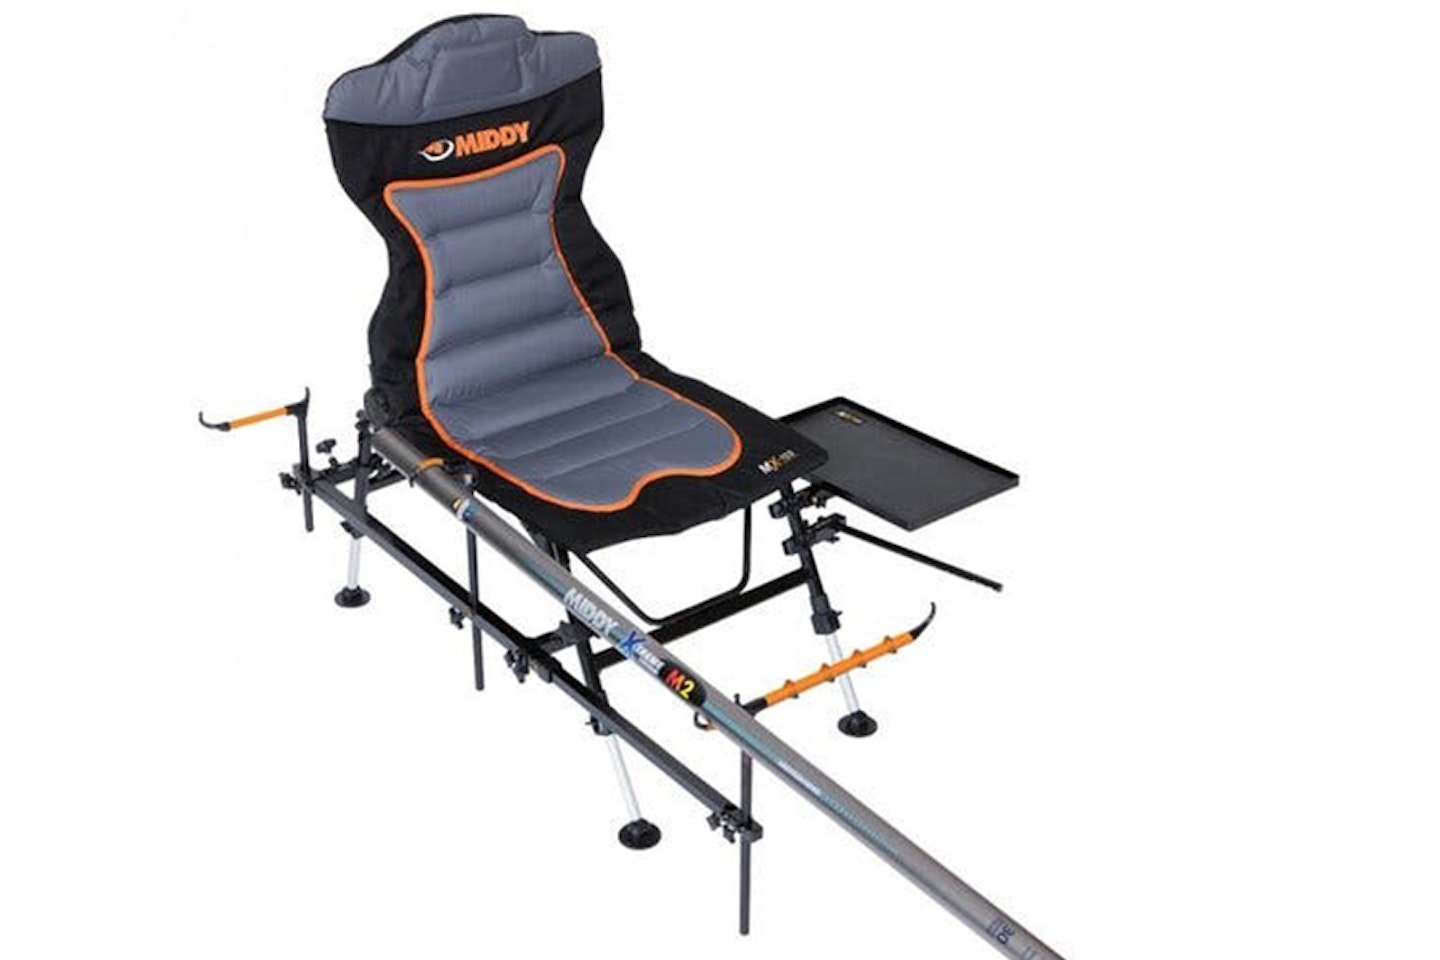 Middy MX-100 Pole/Feeder Reclining Chair